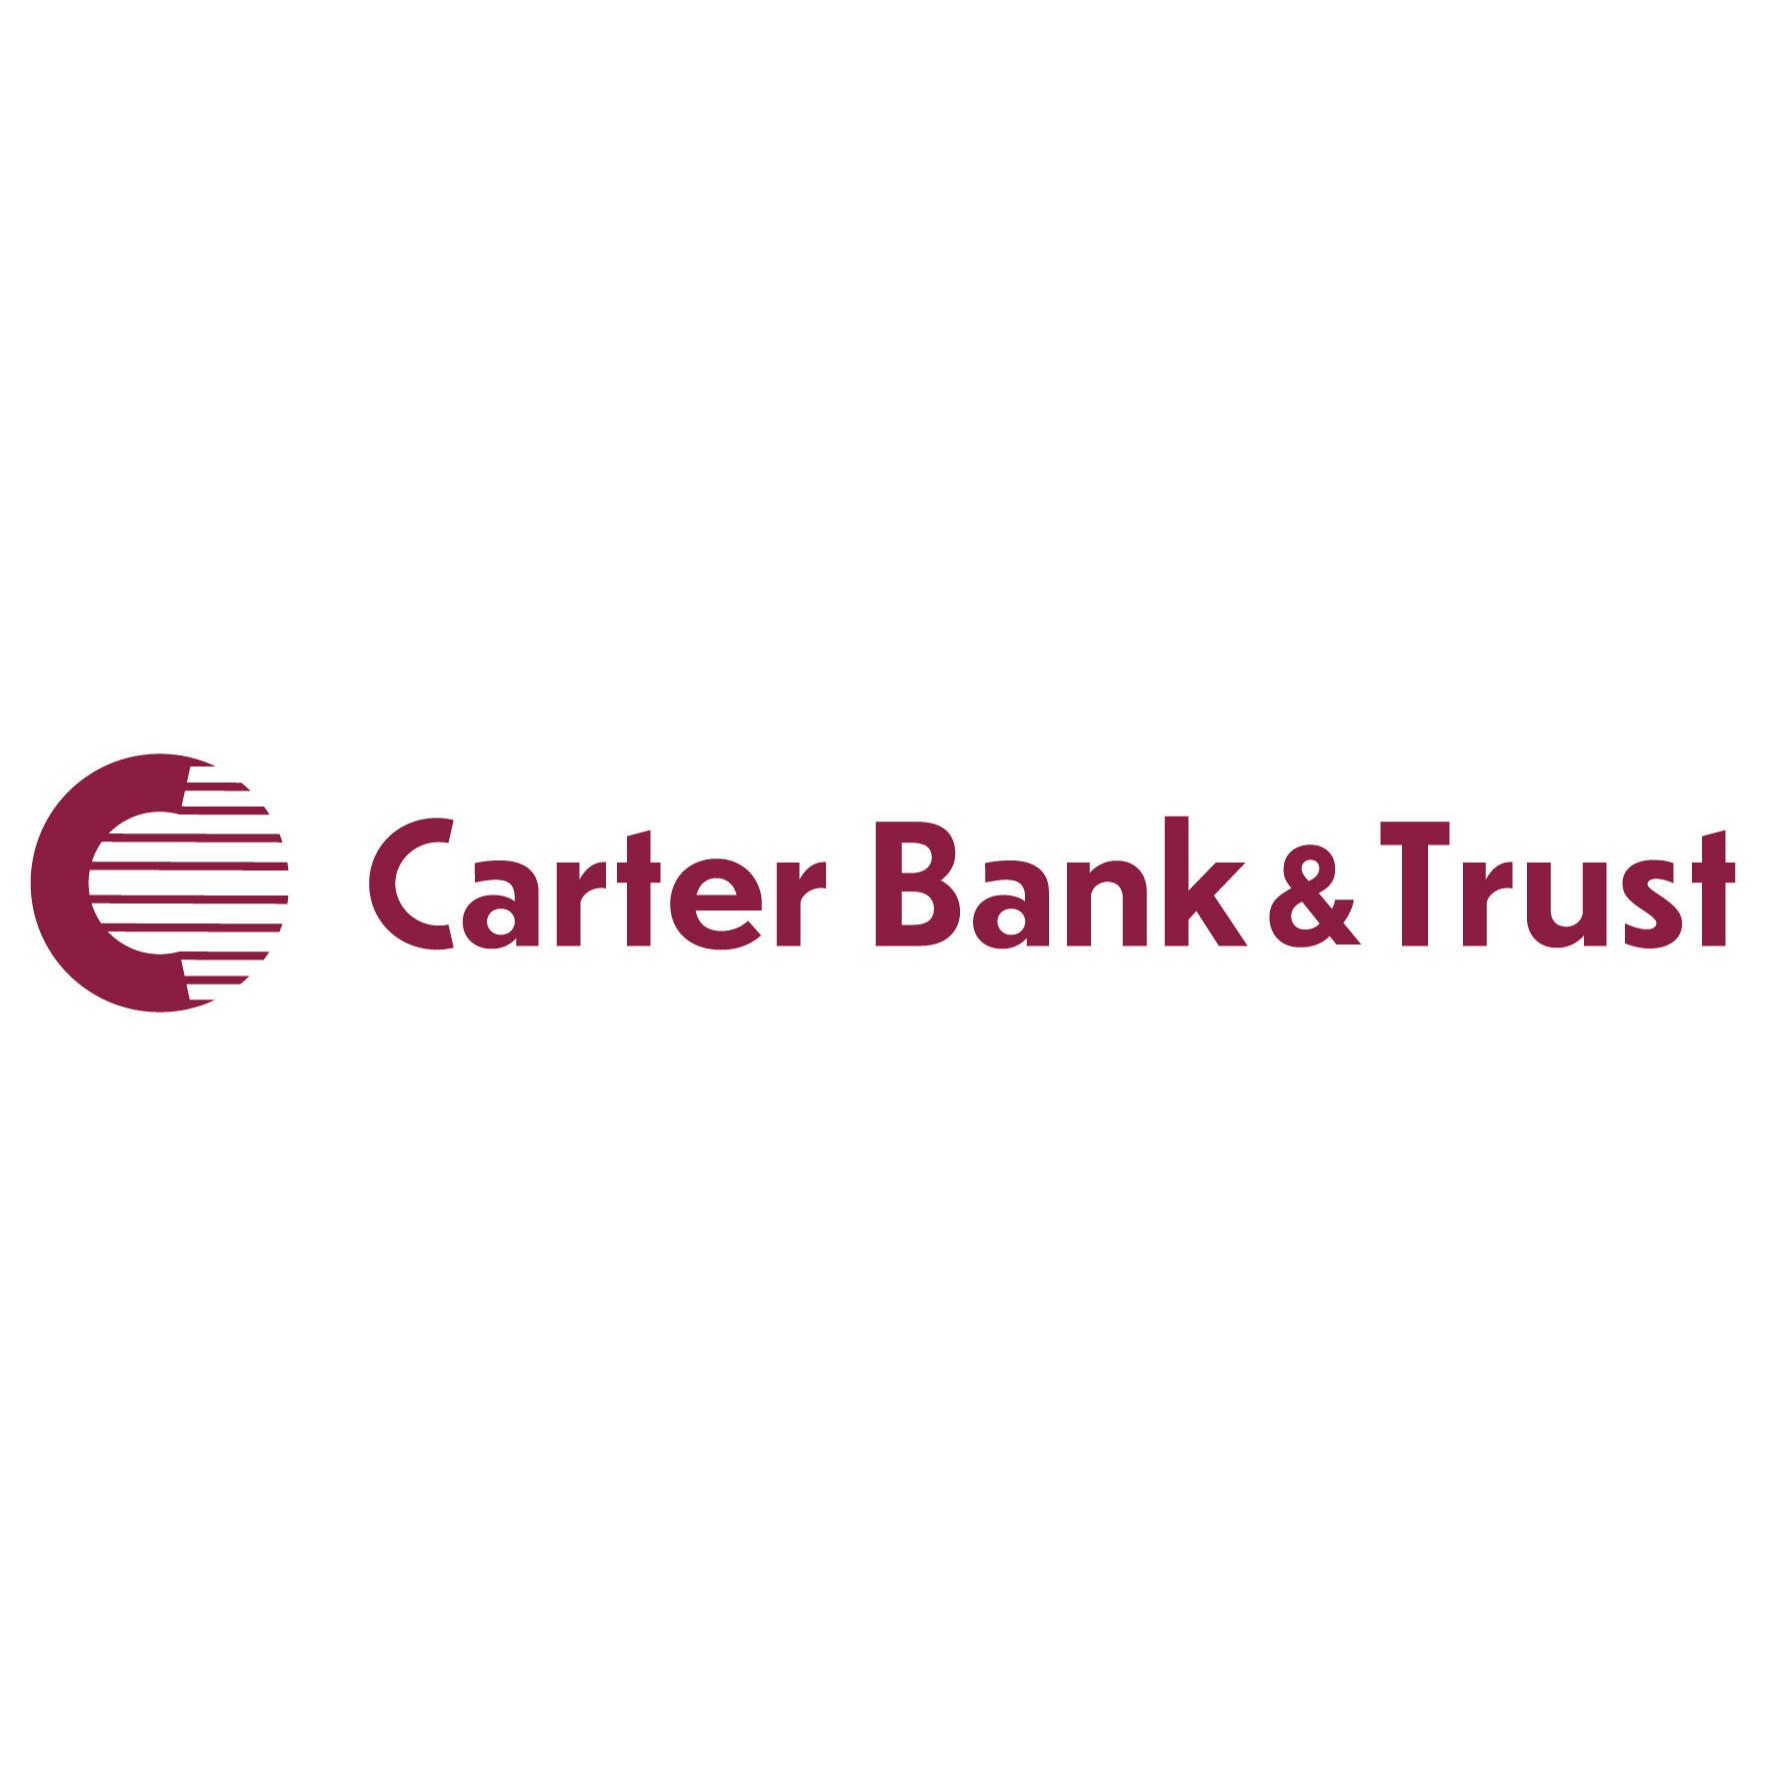 Carter Bank & Trust - Danville, VA 24541 - (434)792-1800 | ShowMeLocal.com